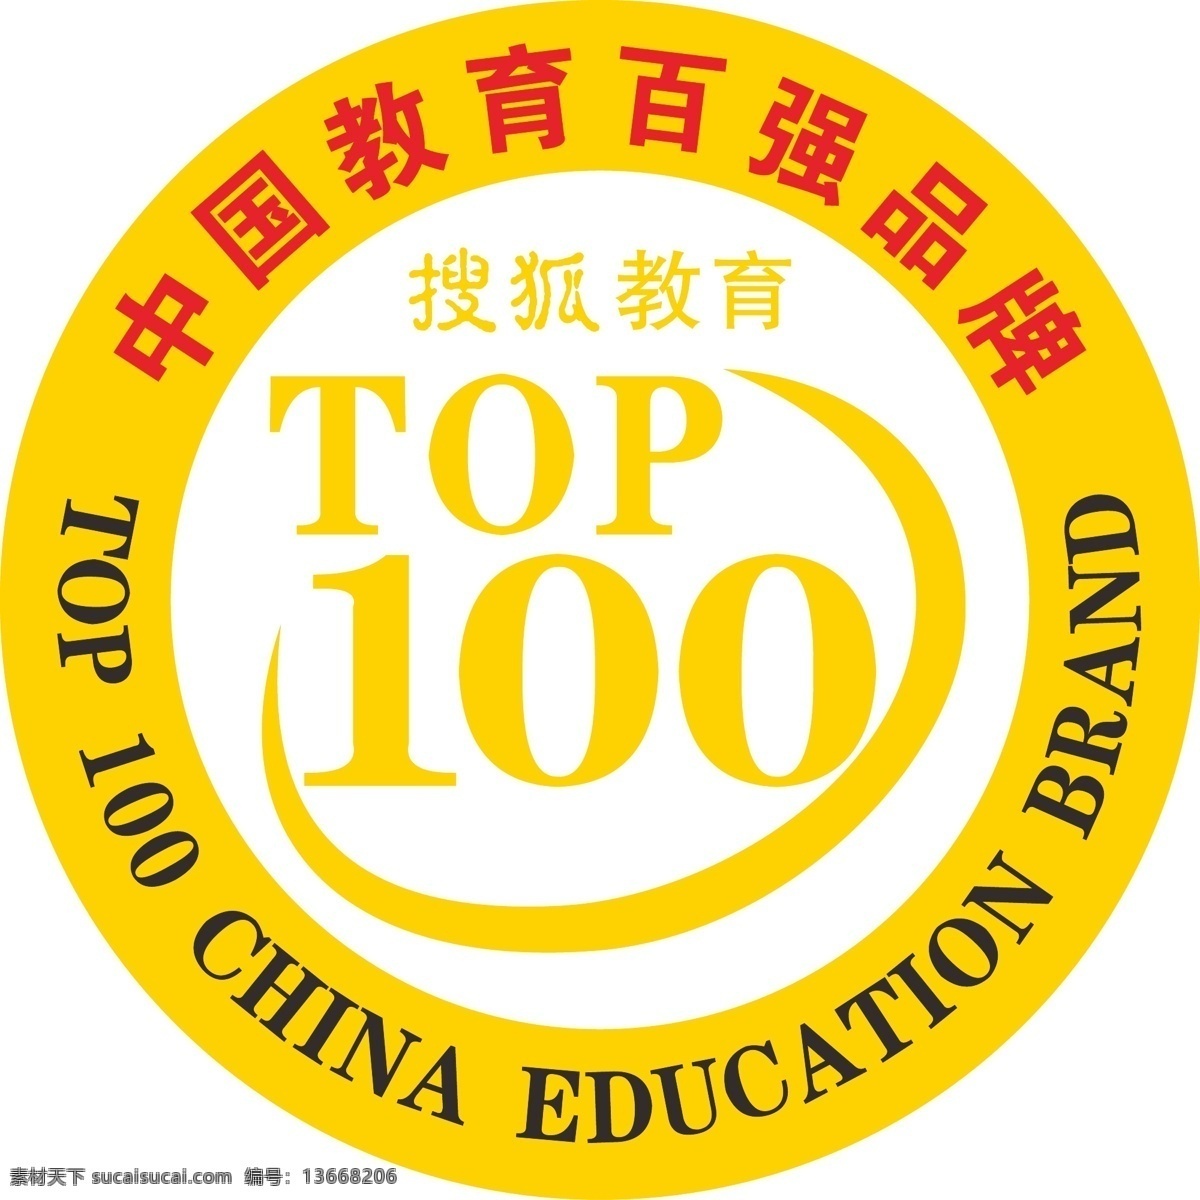 中国 教育 百强 品牌 矢量logo logo 搜狐教育 矢量图 其他矢量图